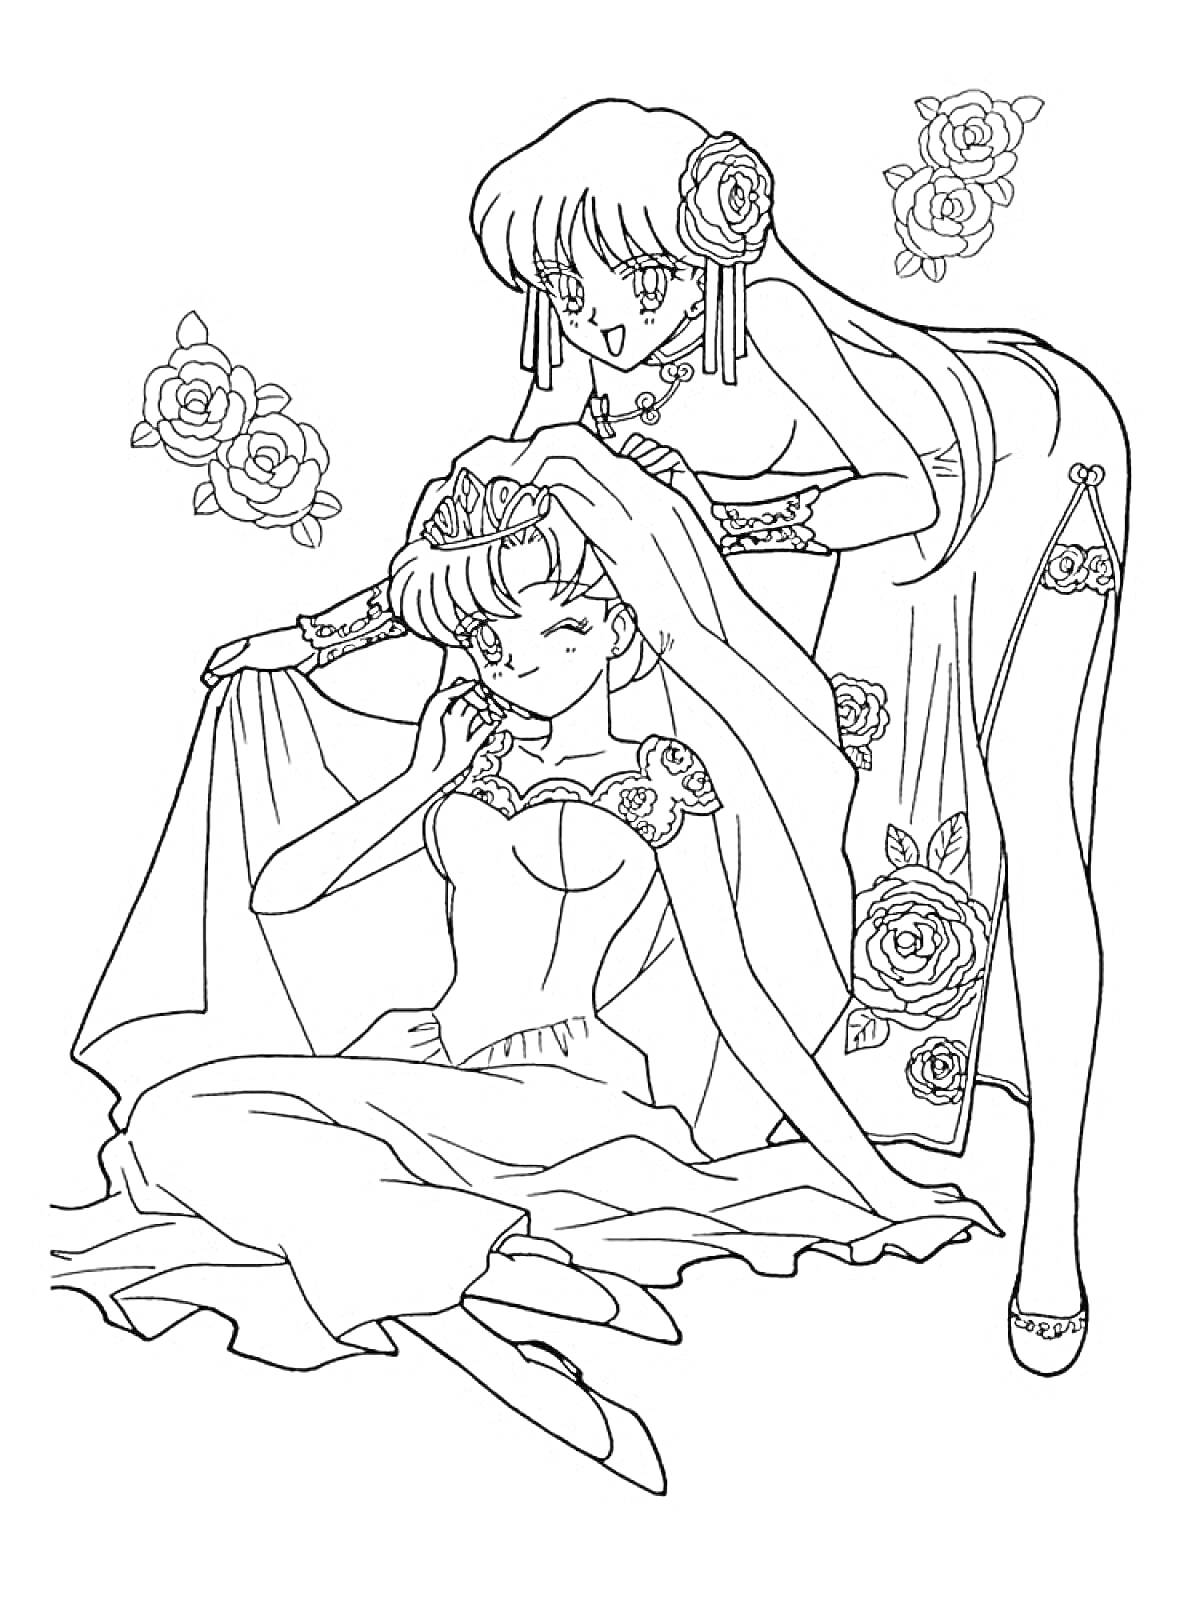 Девушки из Сейлормун, одна сидит в свадебном платье, а другая поправляет ей вуаль, вокруг них розы